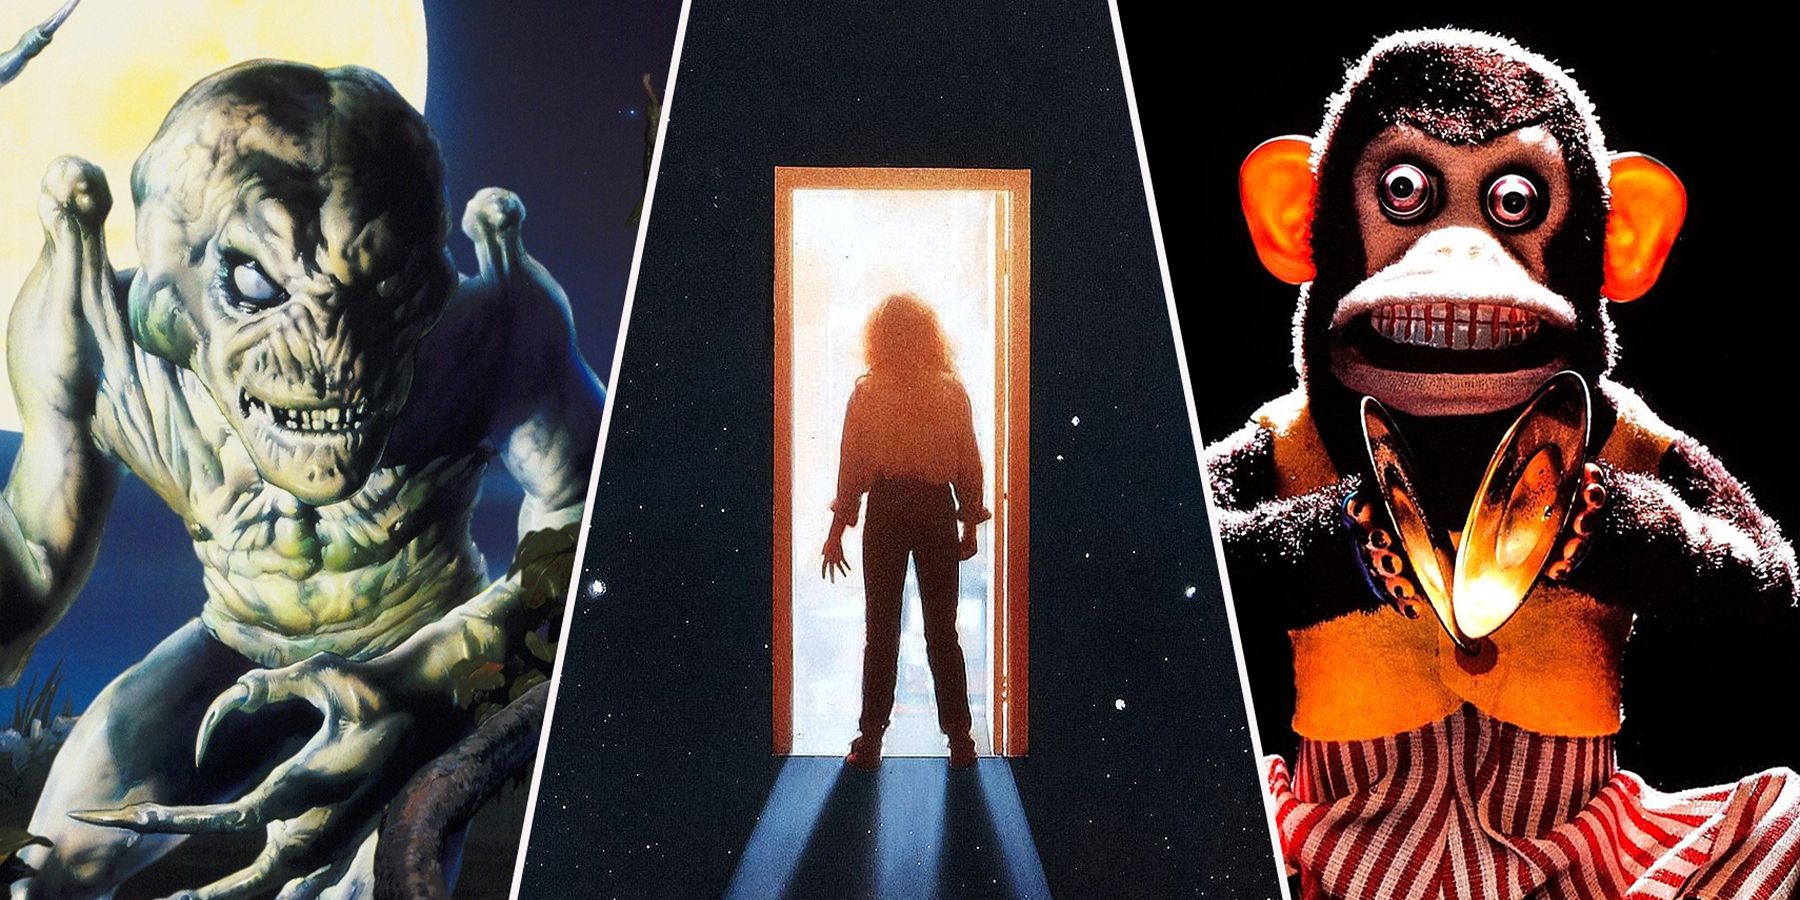 10 bortglömda men fantastiska skräckfilmer från 80-talet du borde se denna Halloween